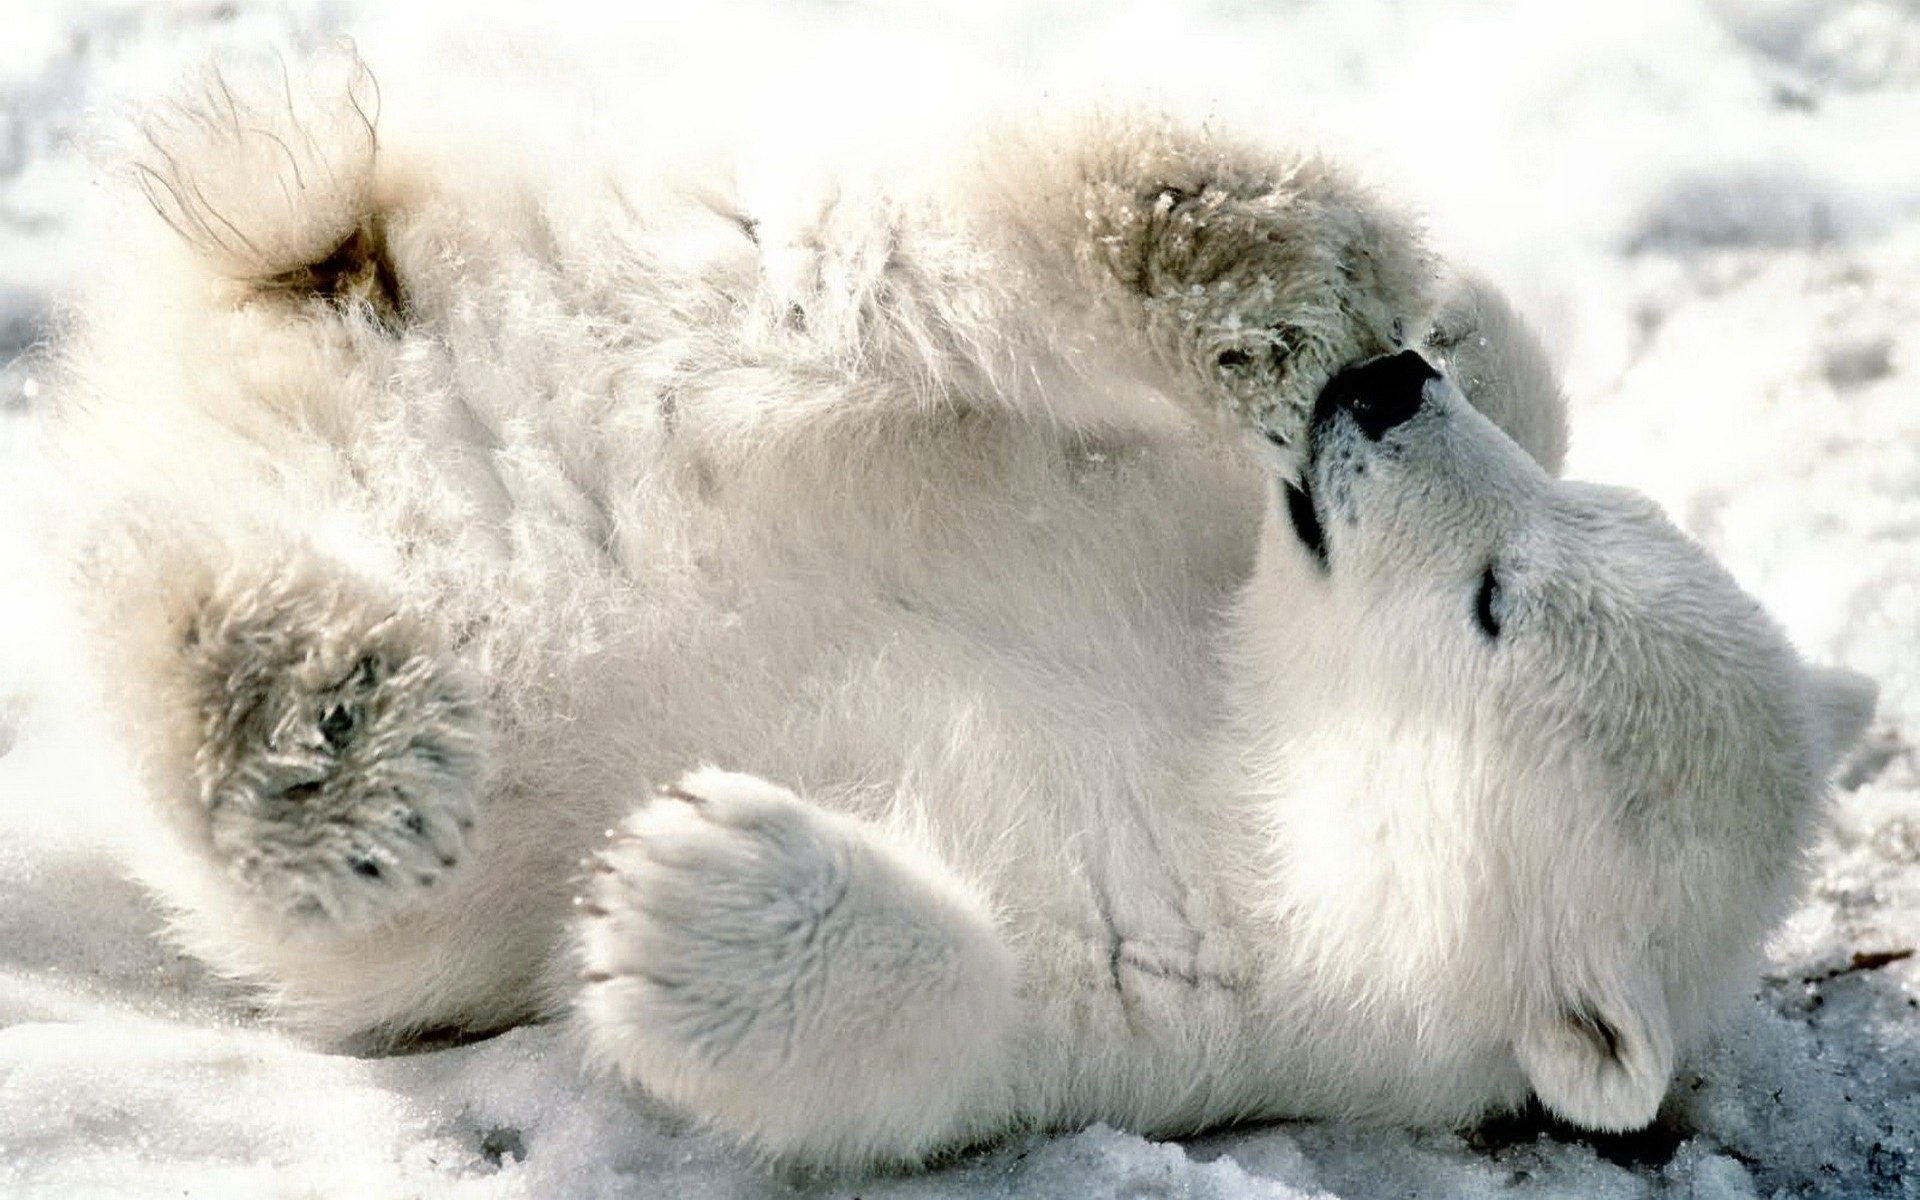 Картинки Медведь, белый медведь, детеныш, игривый, снег, лежа фото и обои на рабочий стол